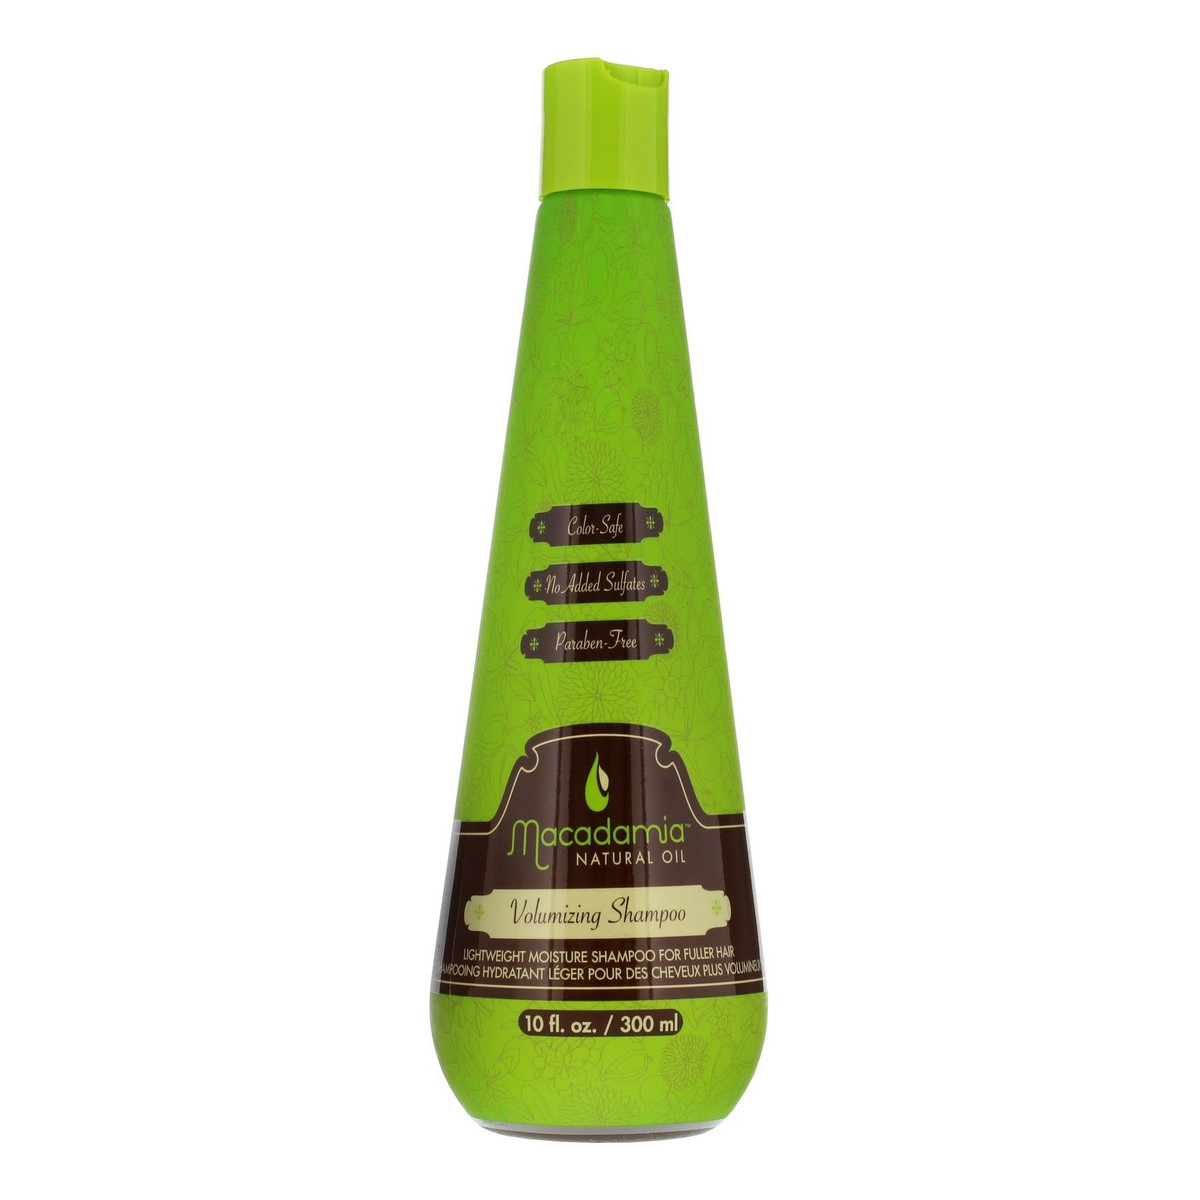 Macadamia Professional Natural Oil Volumising Shampoo Szampon do włosów zwiększający objętość 300ml